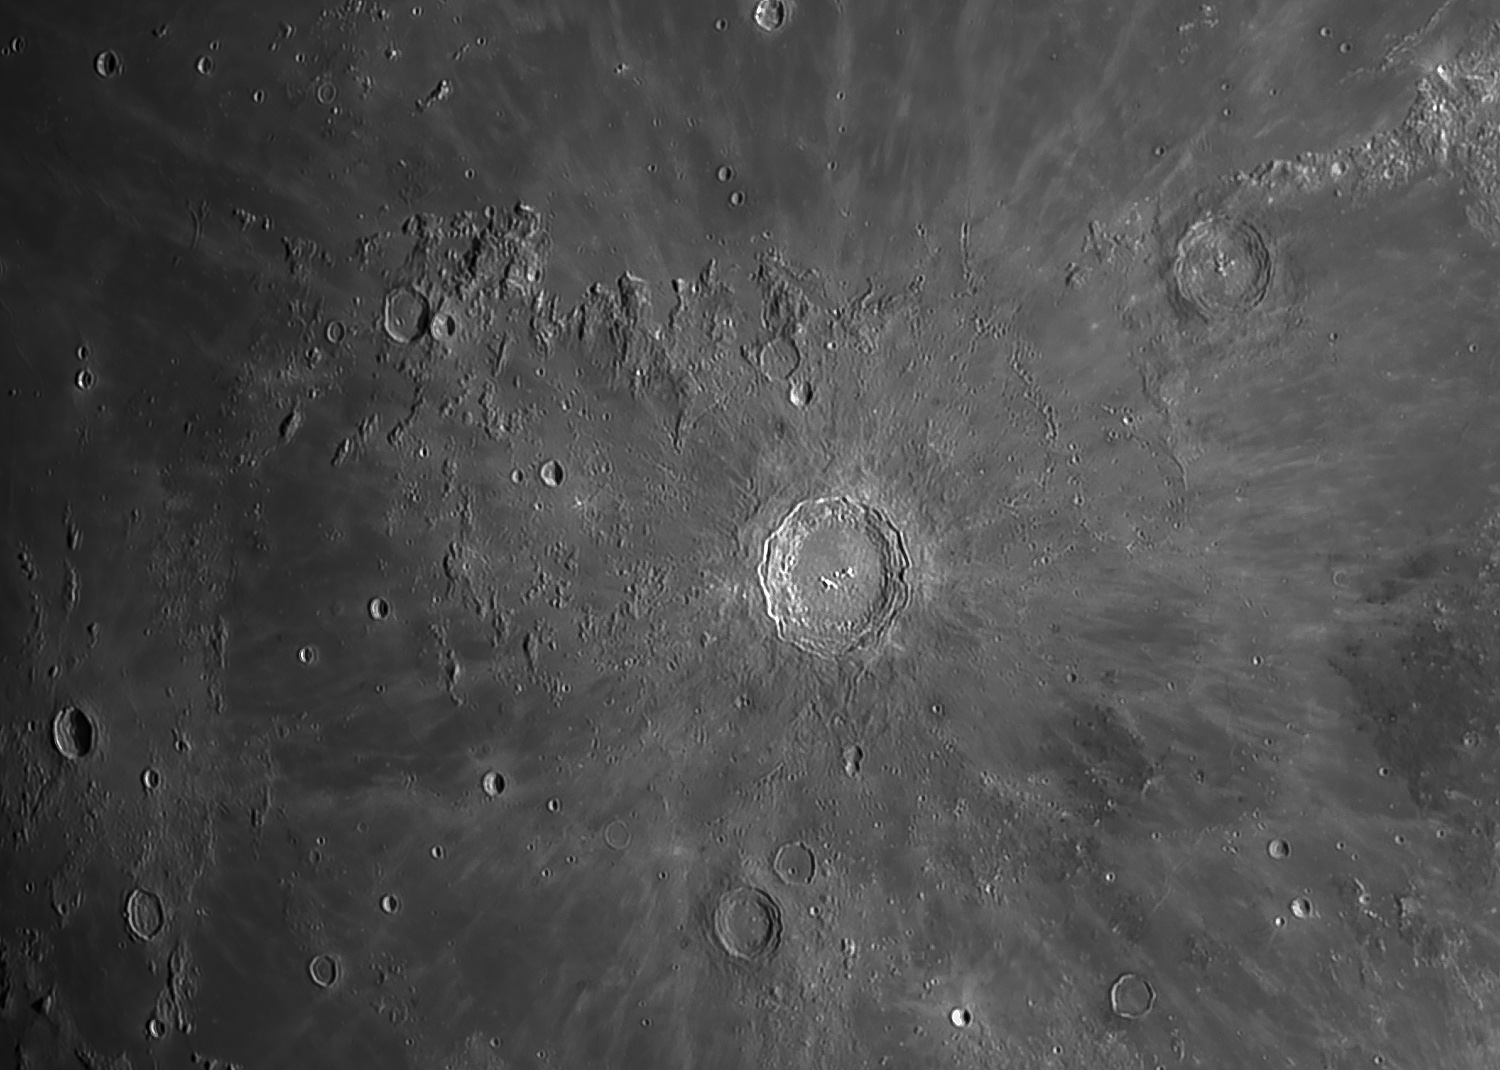 Copernicus crater and surrounding region...